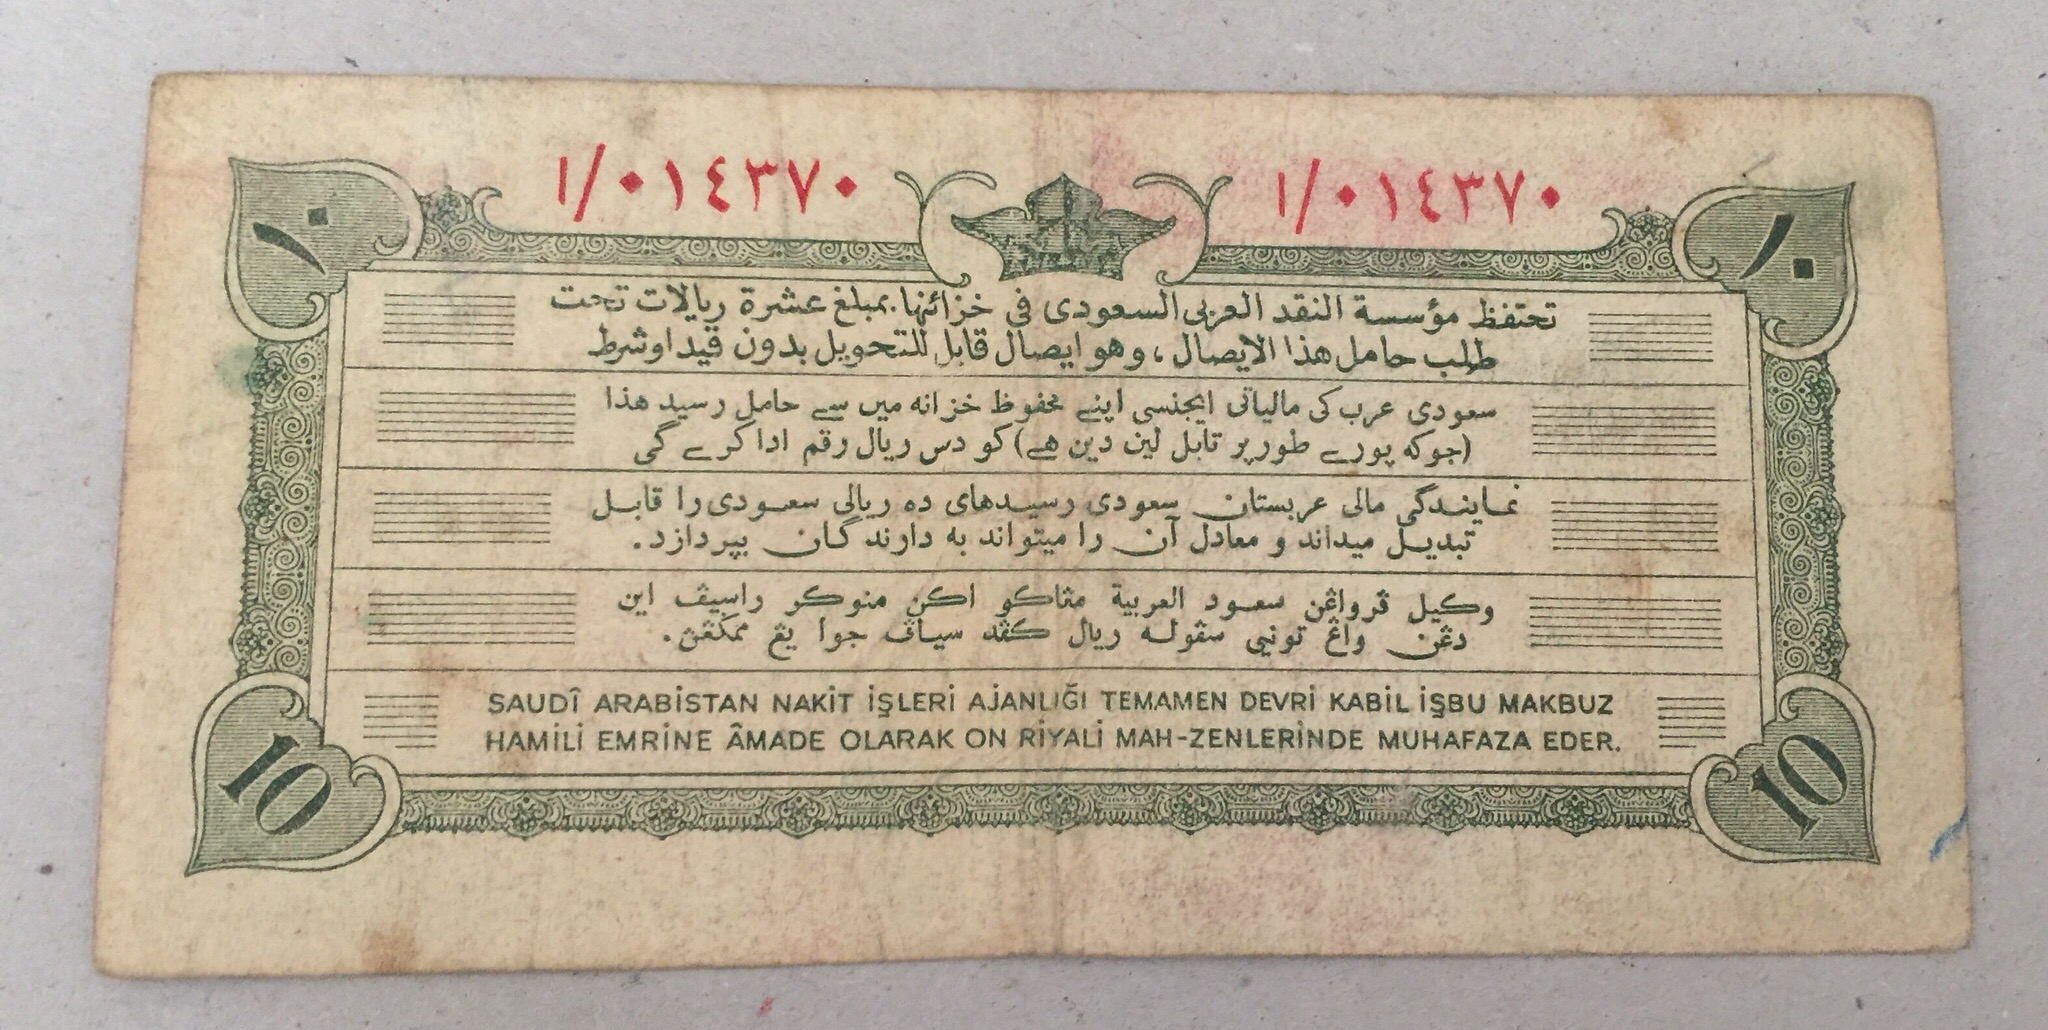 1372 AH 1953 Saudi Arabia 10 Riyal Banknote Haj Hajj Pilgrim Receipt First Issue المملكة العربية السعودية عشرة ريال ابيض وصل الحج سنة ١٩٥٣